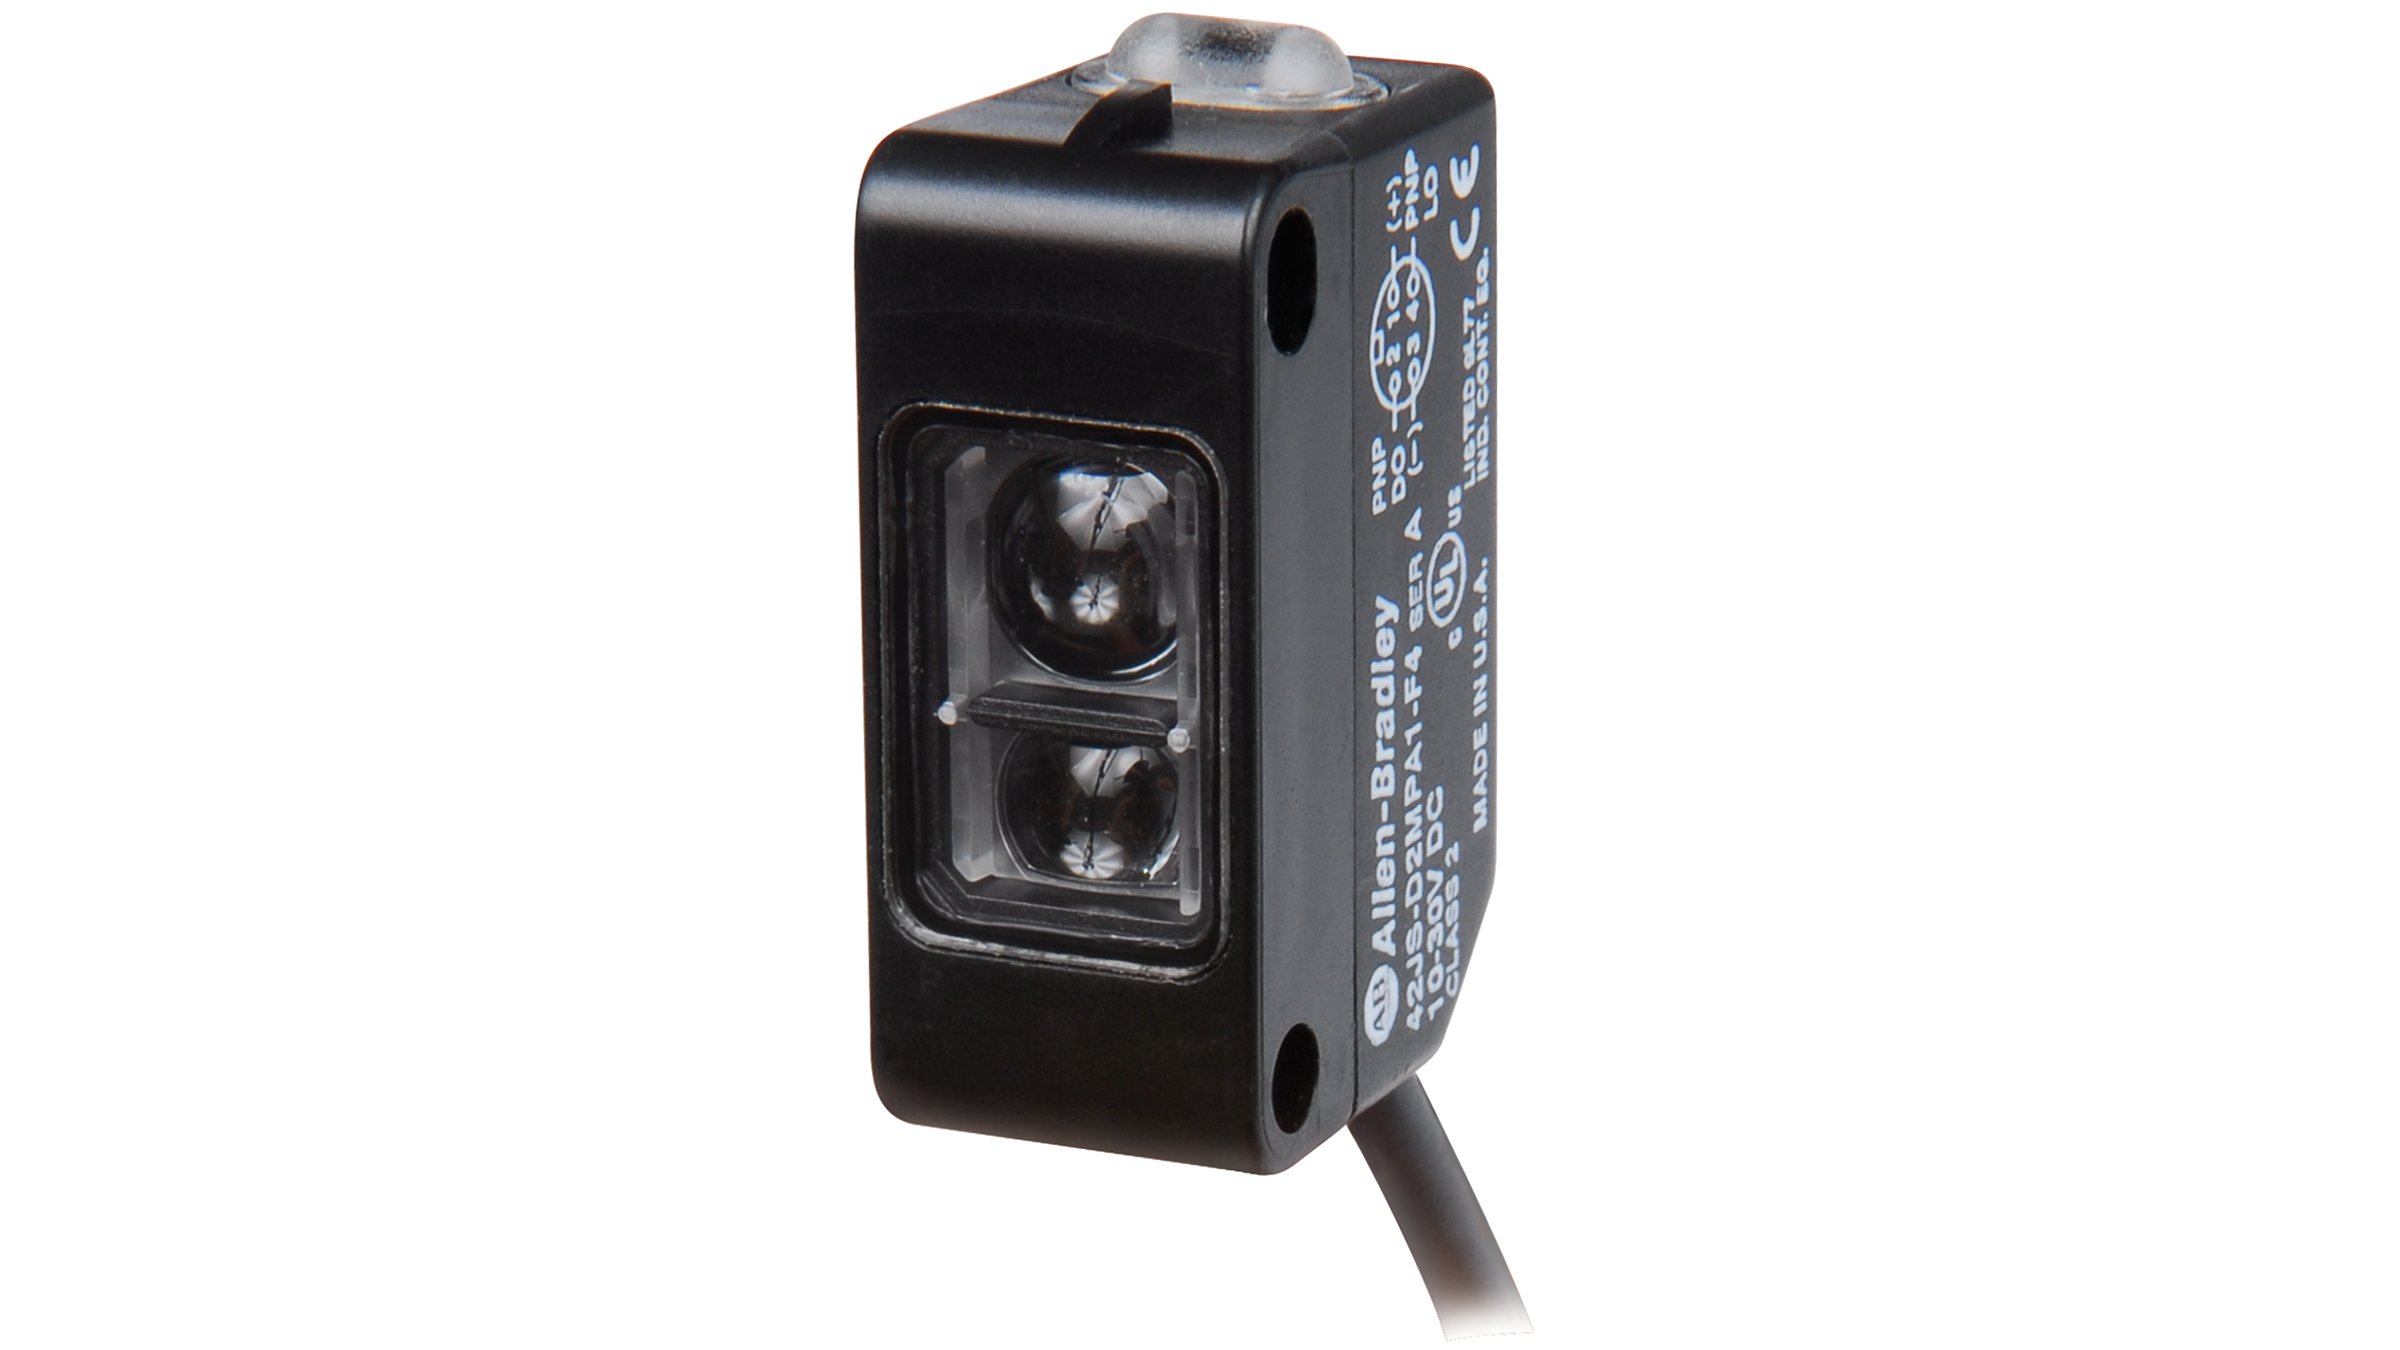 黑色 42JS VisiSight 传感器的静态视图，顶部有 LED 指示灯和调节旋钮，底部有线缆连接器。